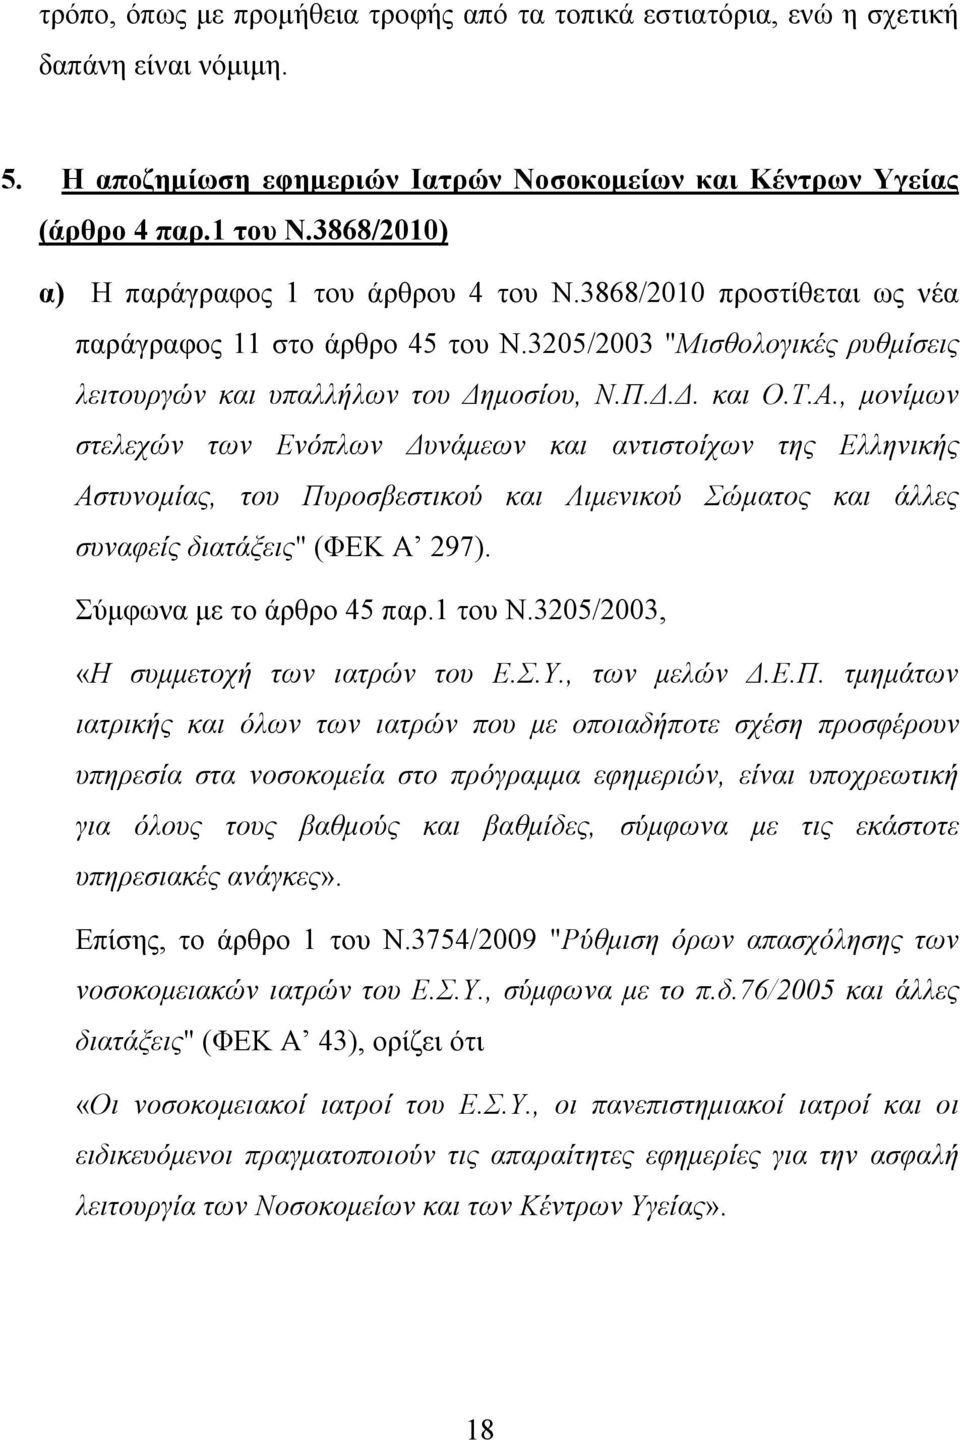 Α., μονίμων στελεχών των Ενόπλων Δυνάμεων και αντιστοίχων της Ελληνικής Αστυνομίας, του Πυροσβεστικού και Λιμενικού Σώματος και άλλες συναφείς διατάξεις" (ΦΕΚ Α 297). Σύμφωνα με το άρθρο 45 παρ.